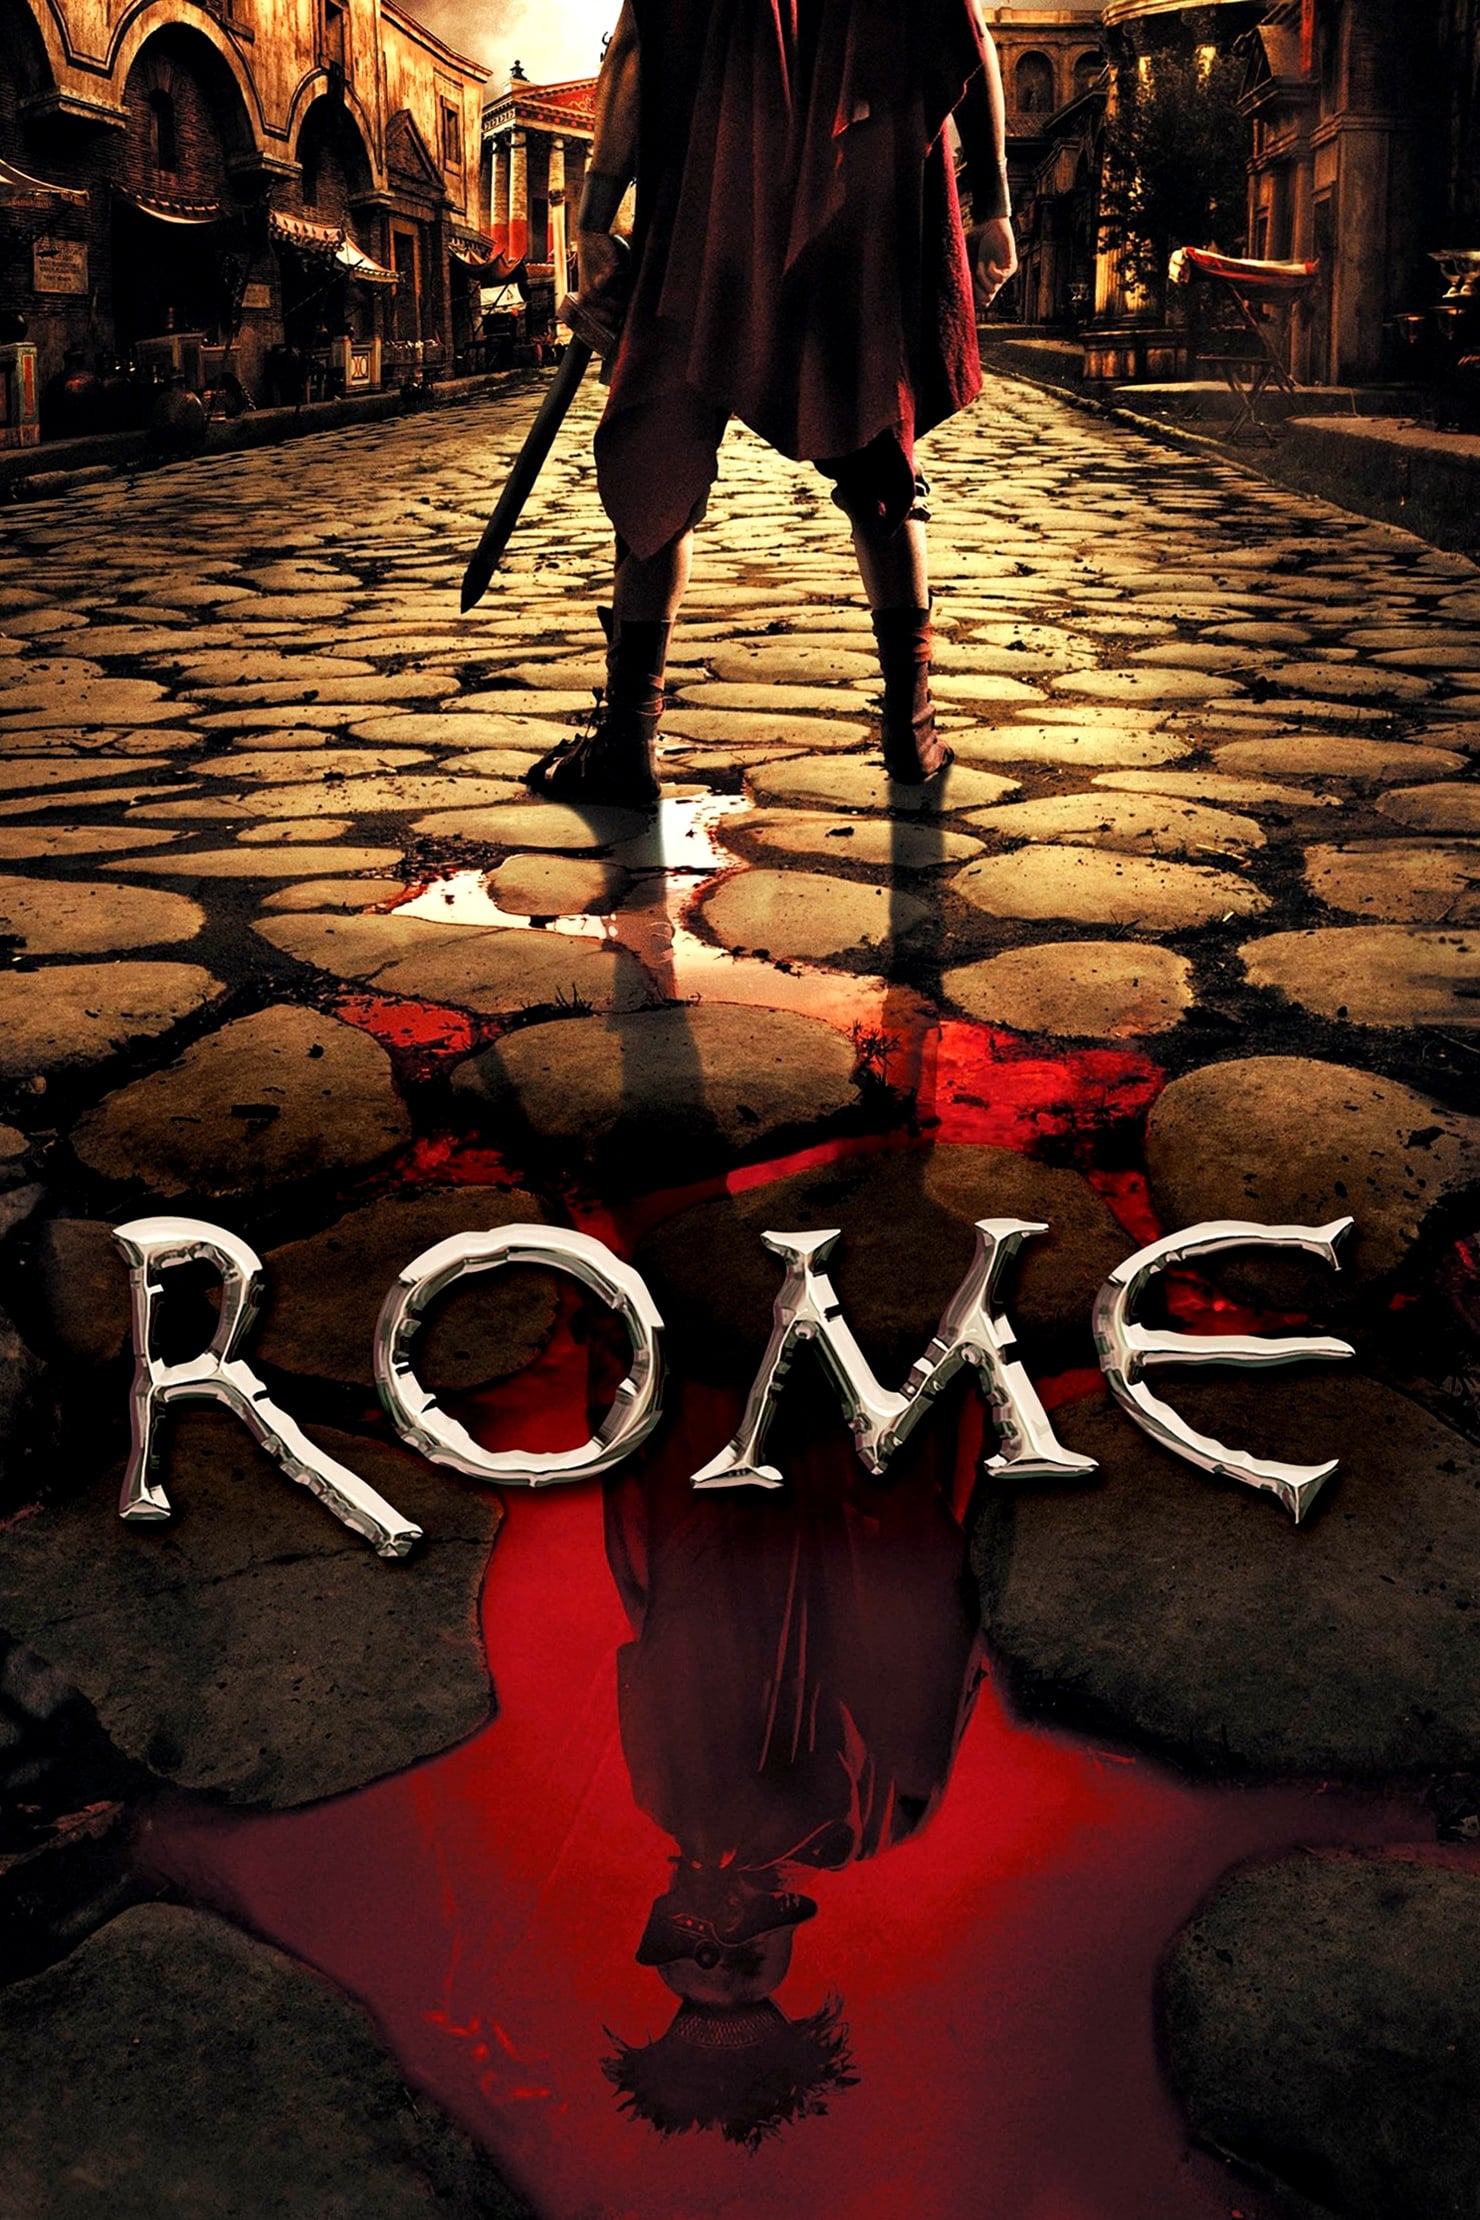 Rom (2005)